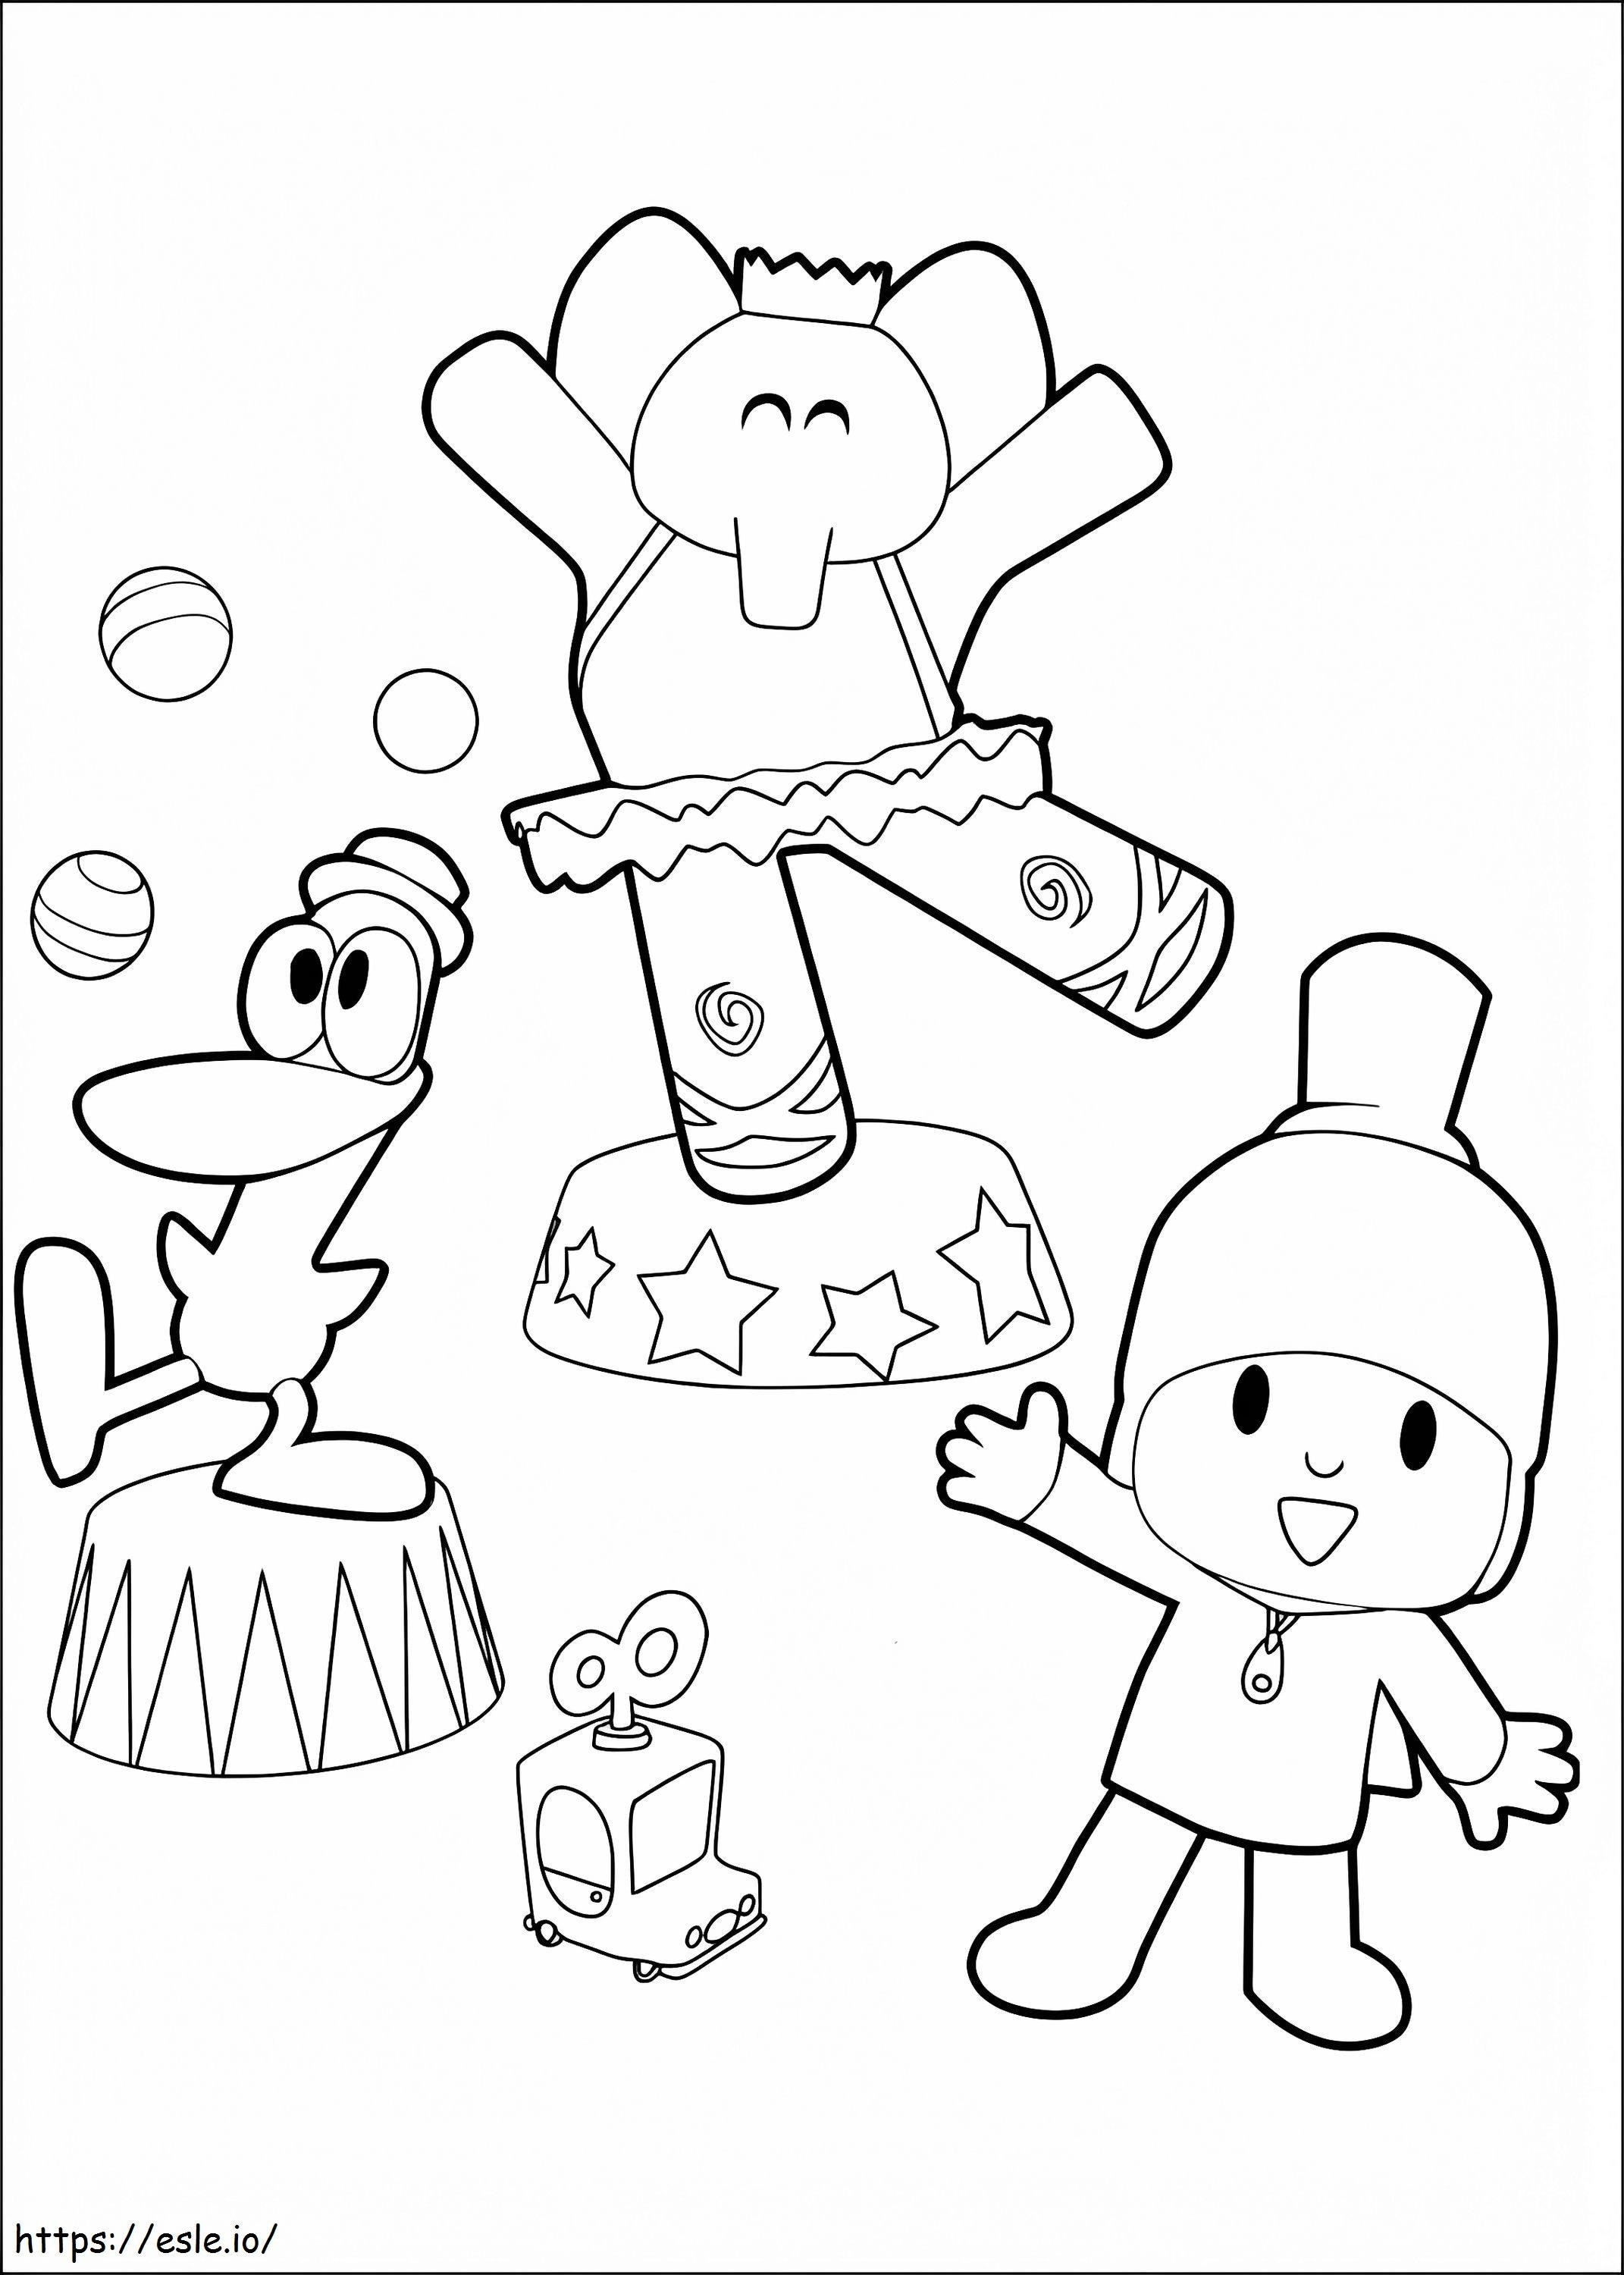 Pocoyo Circus coloring page